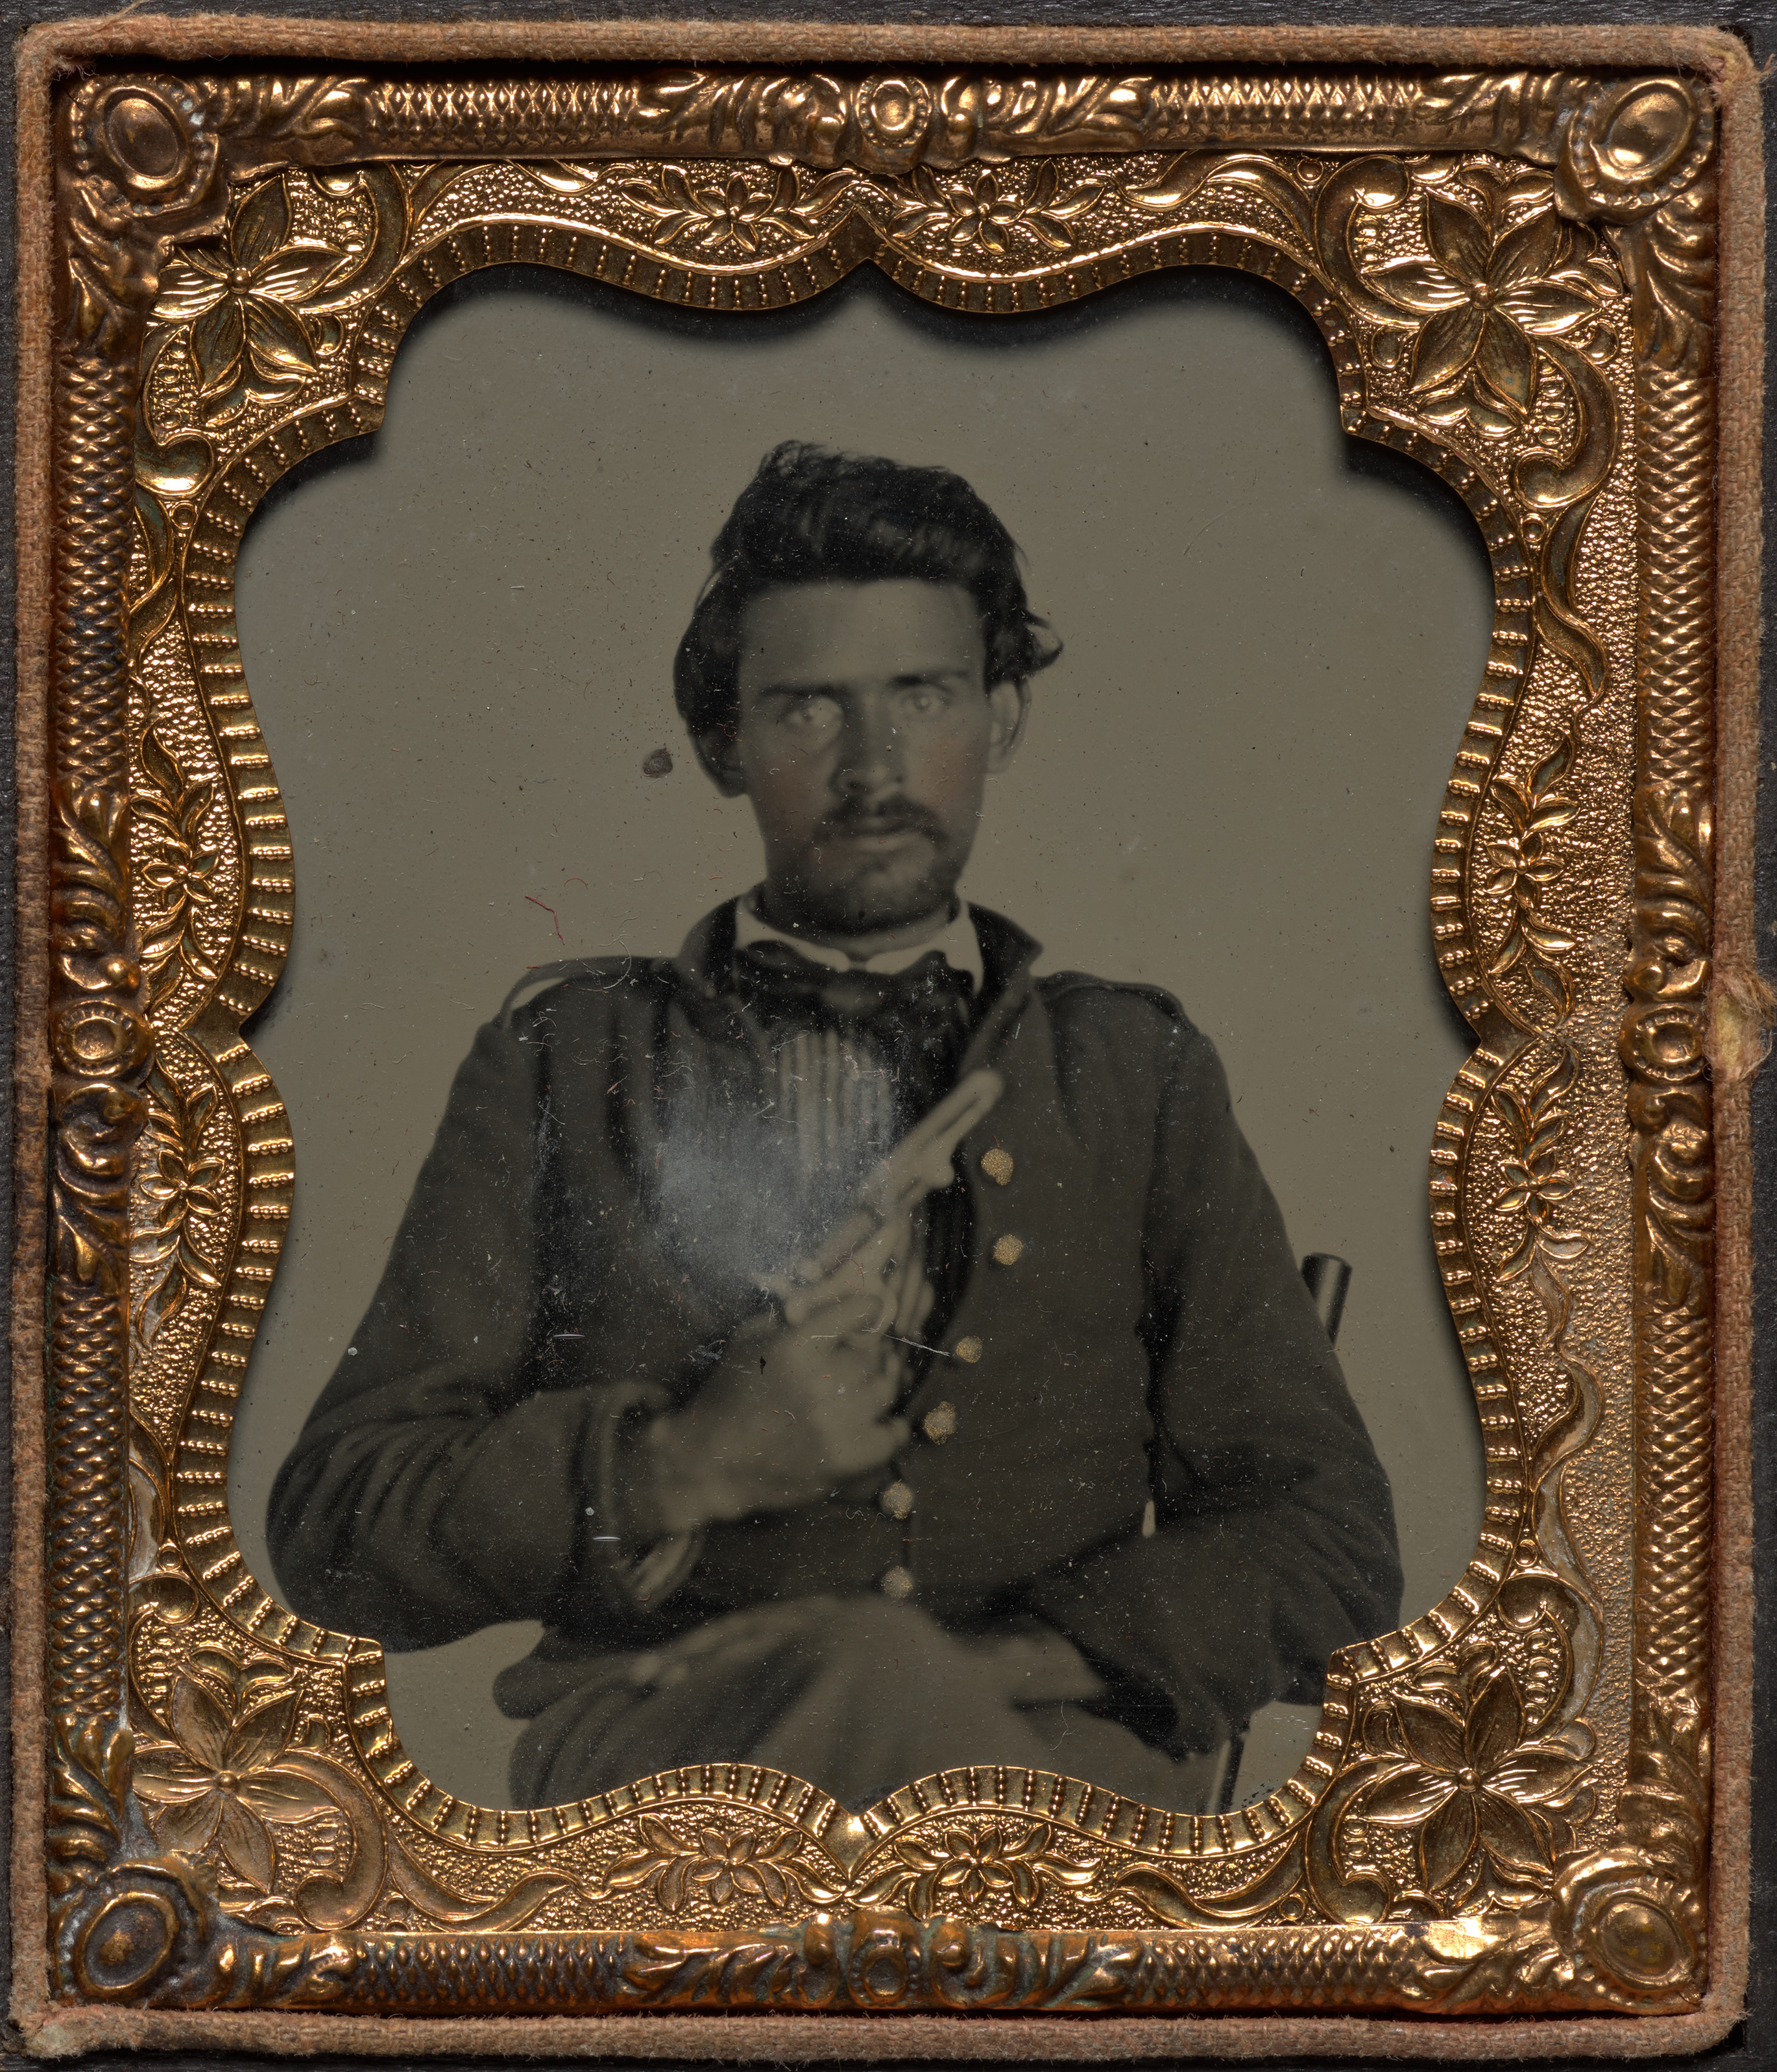 Ohio Civil War soldier Hanson J. Cochran with Colt revolver